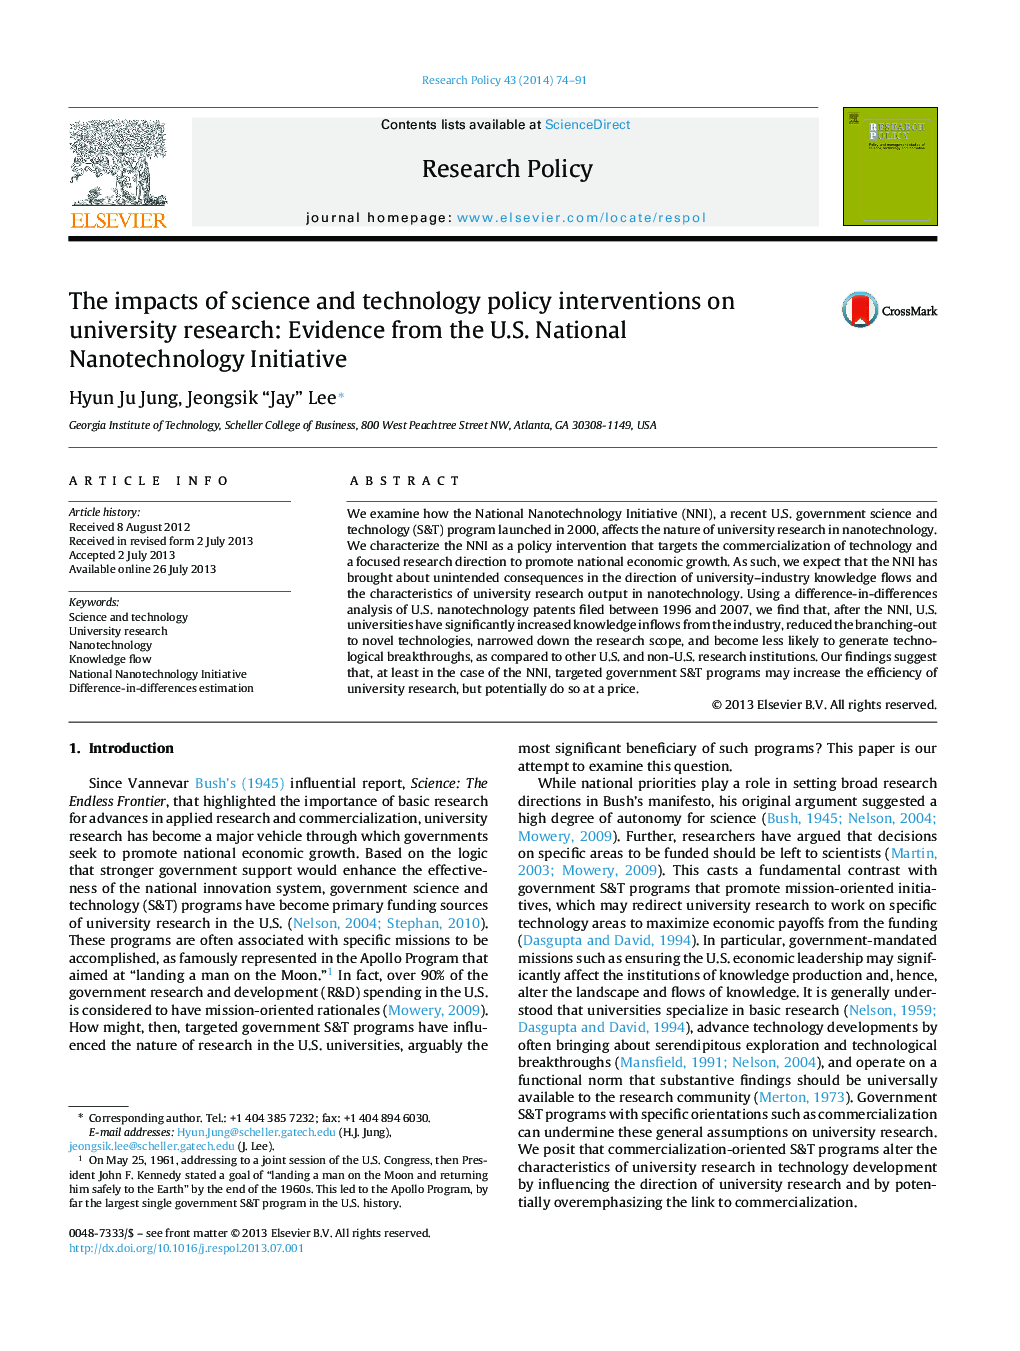 تأثیر مداخلات سیاست علمی و فناوری در تحقیقات دانشگاهی: شواهد از ابتکار ملی فناوری نانو در ایالات متحده 